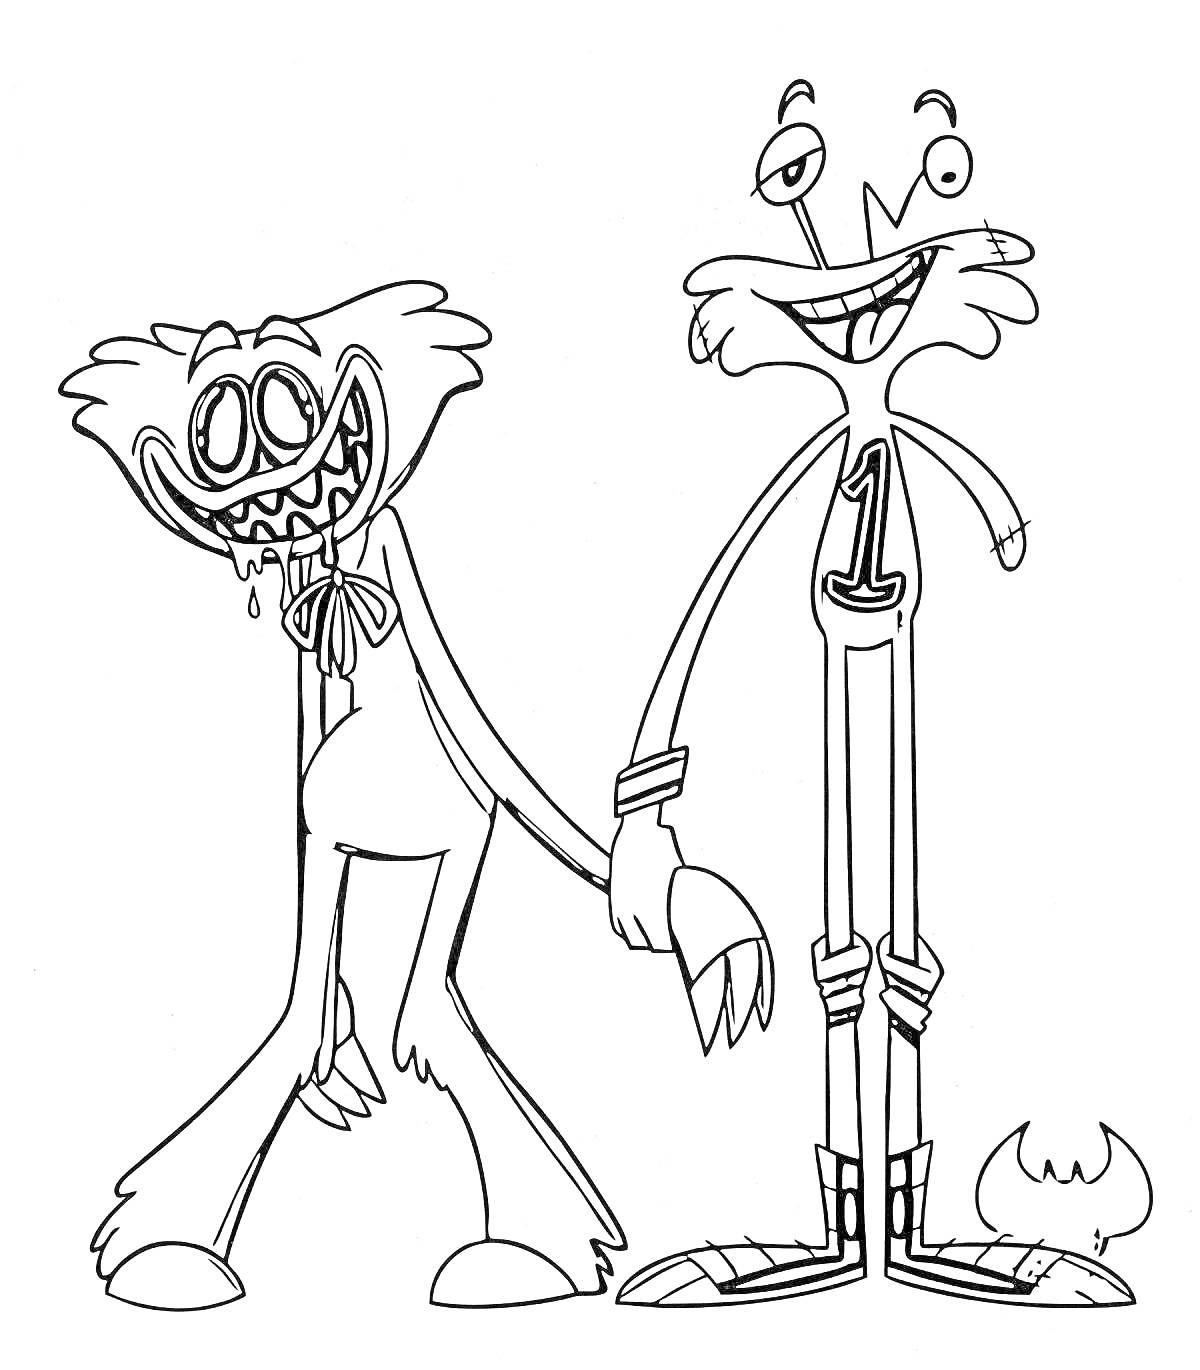 Раскраска Два персонажа с длинными ногами и руками, один с множеством зубов и бантом на шее, второй улыбающийся в кроссовках с номером 